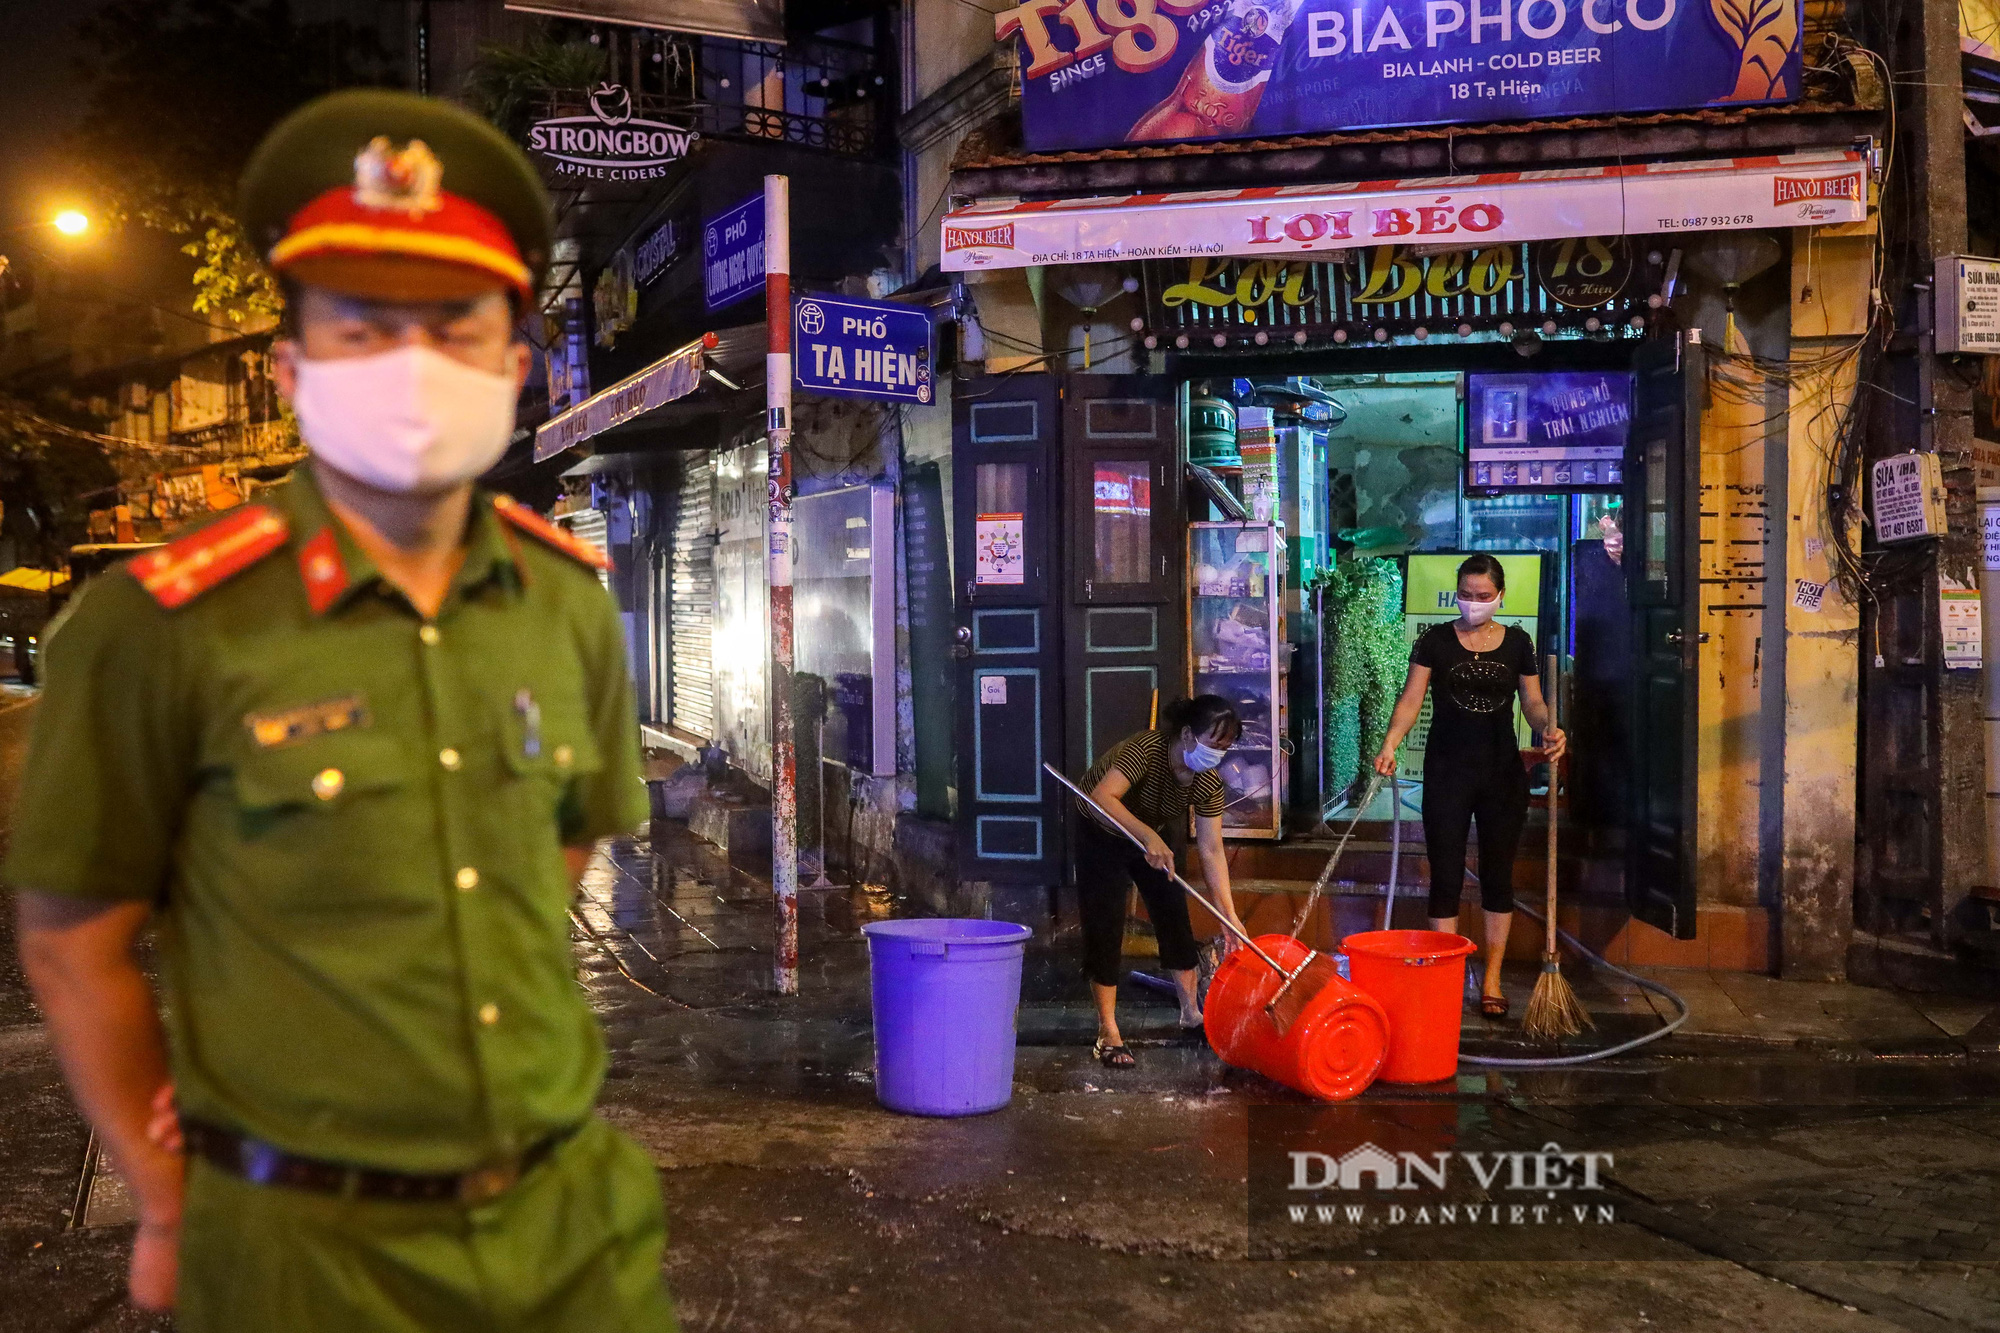 Hàng, quán ở Hà Nội đồng loạt thực hiện giãn cách trong đêm - Ảnh 6.